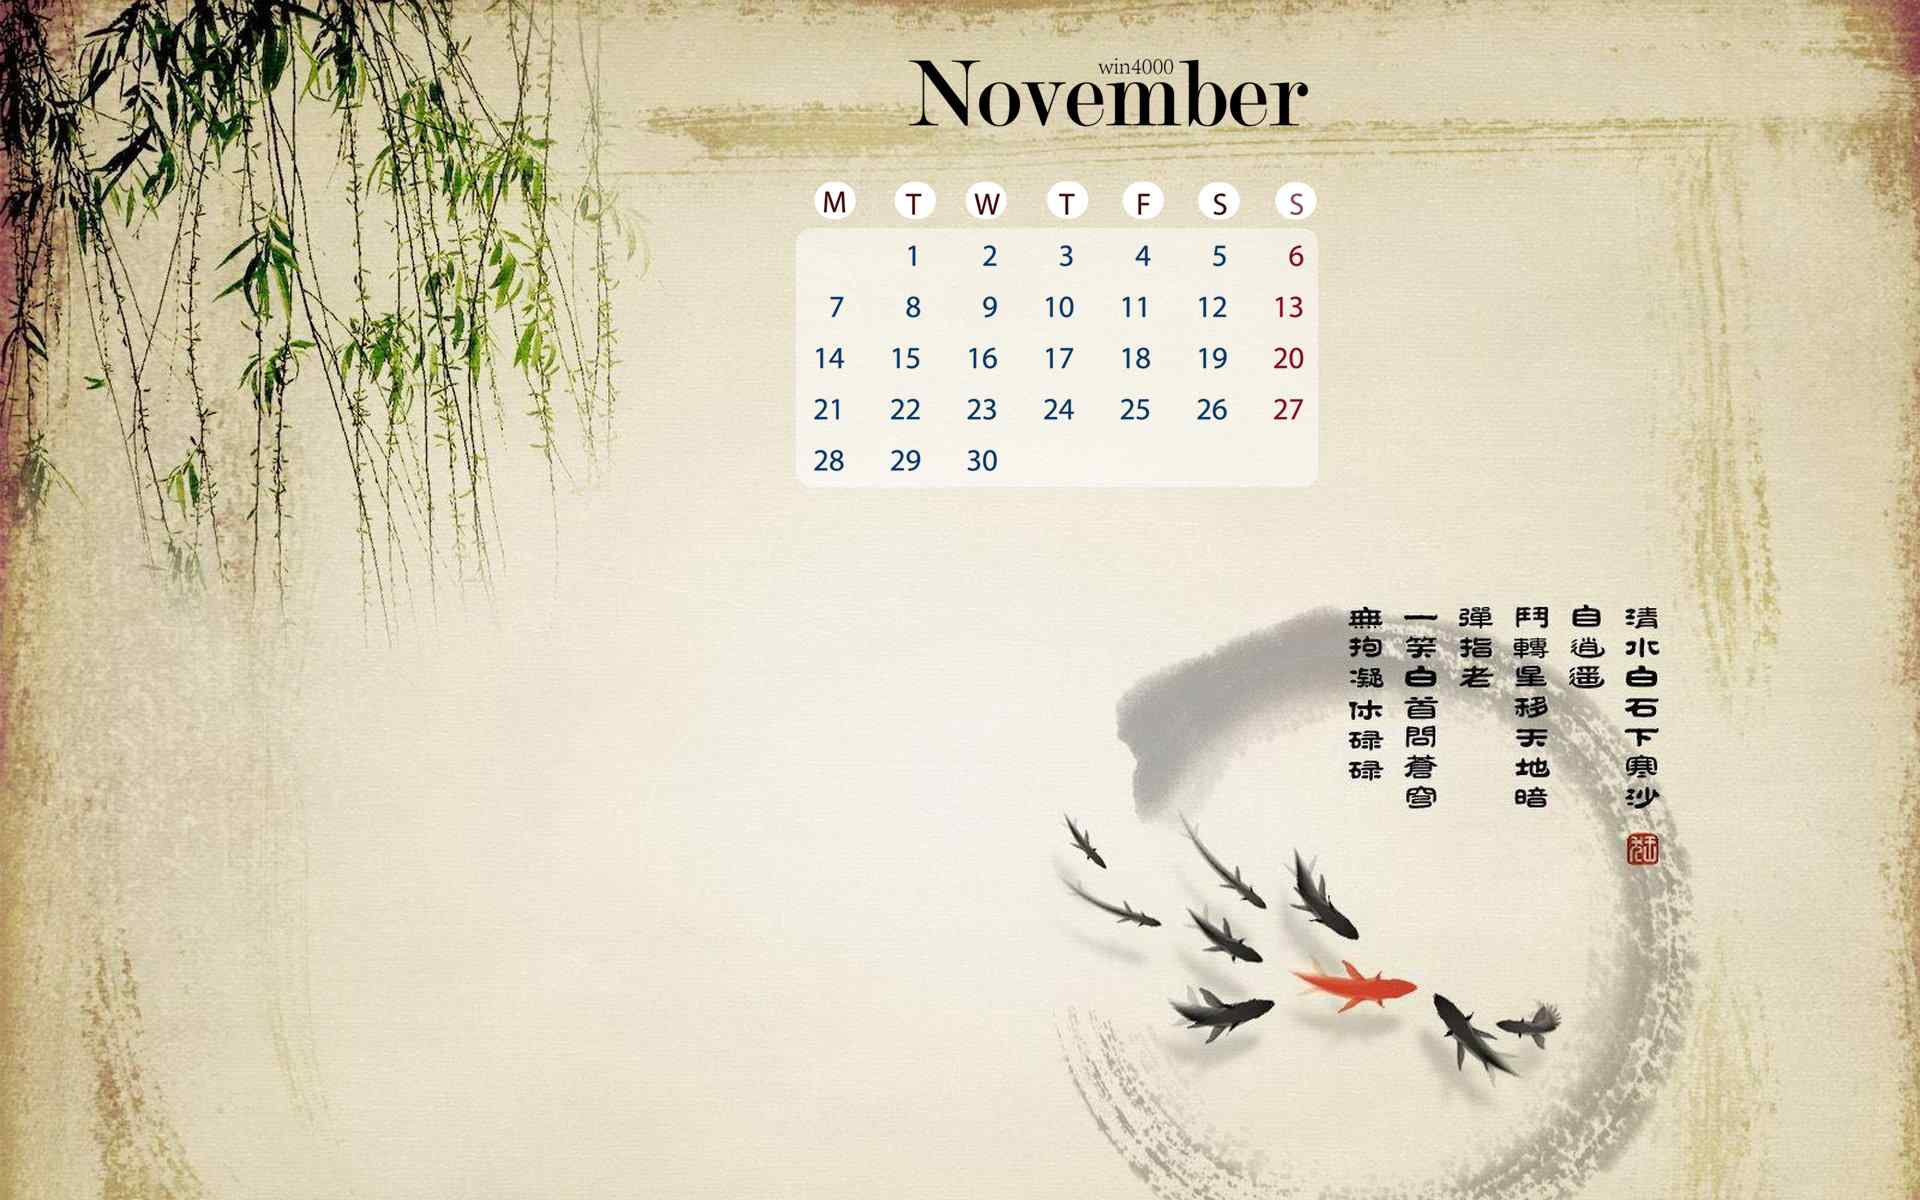 2016年11月日历唯美水墨中国风图片壁纸下载